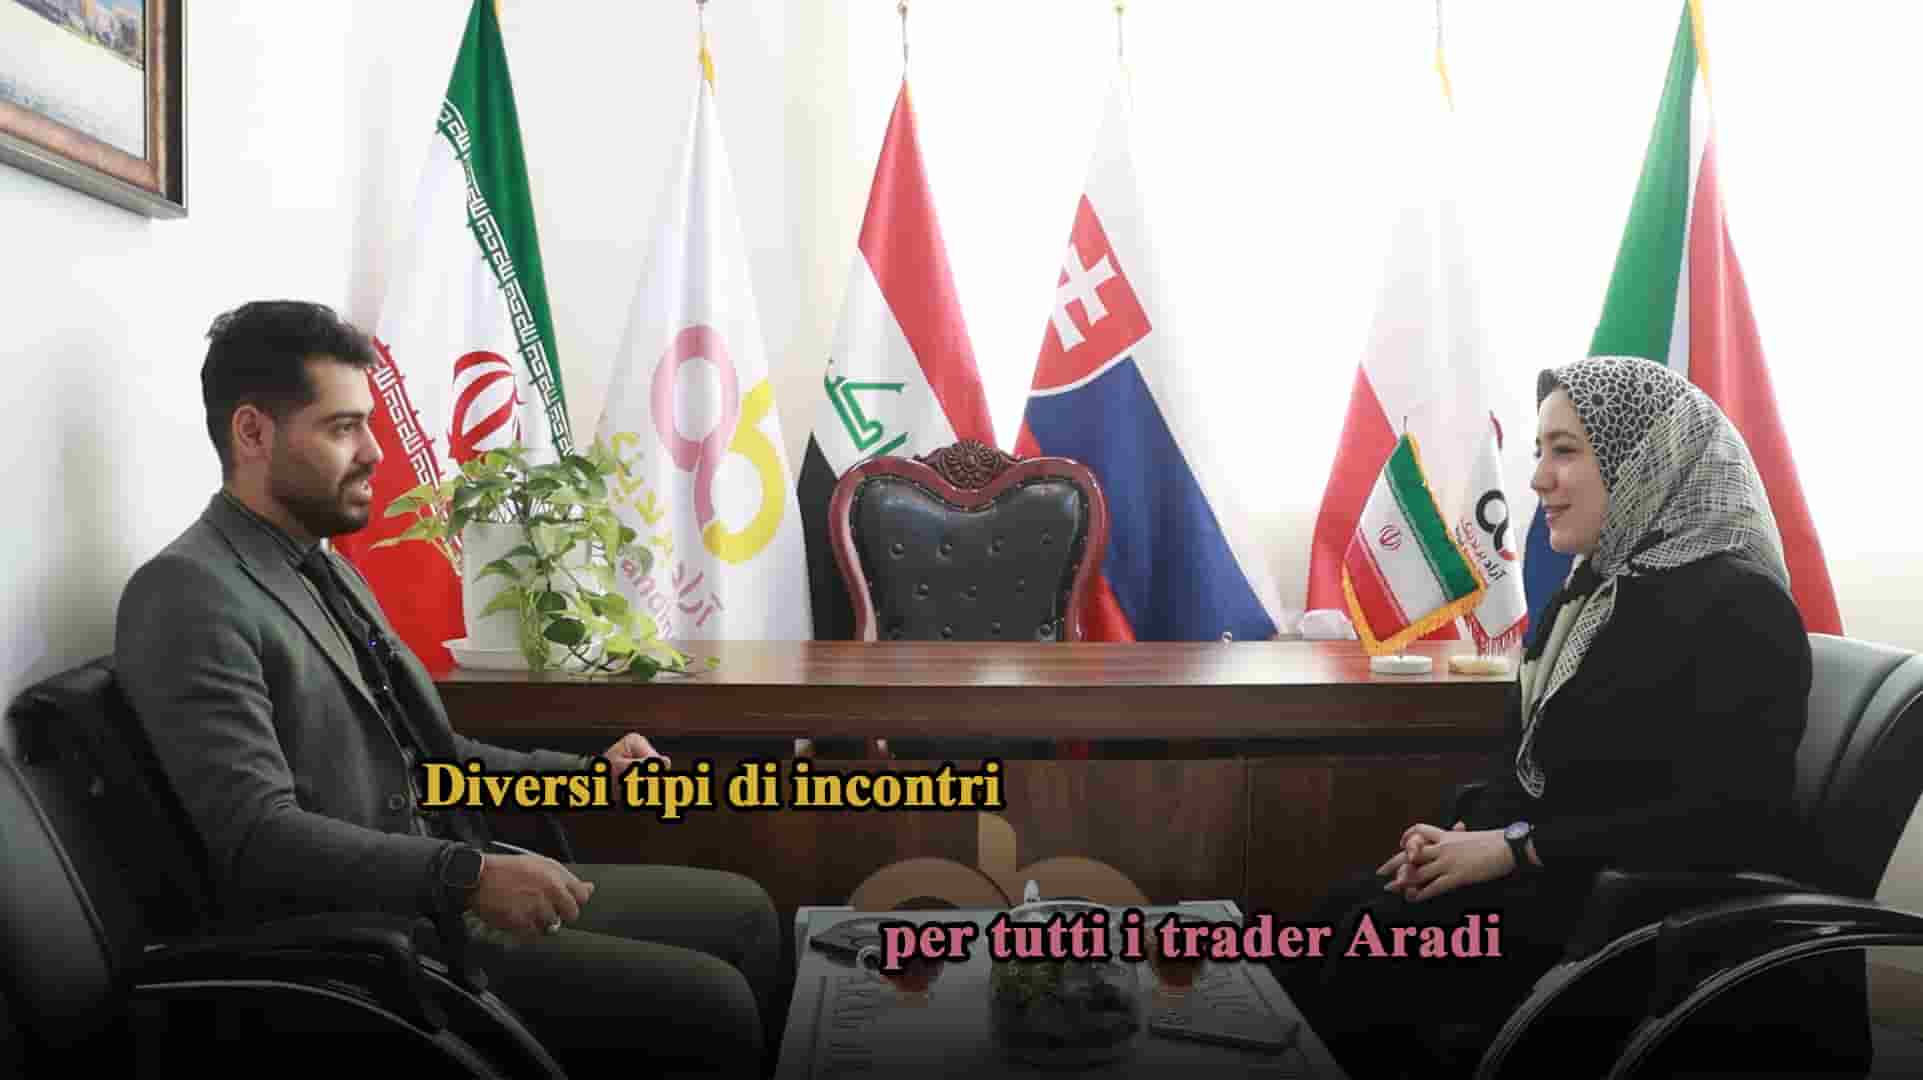 Diverse tipologie di incontri per tutti i trader Aradi